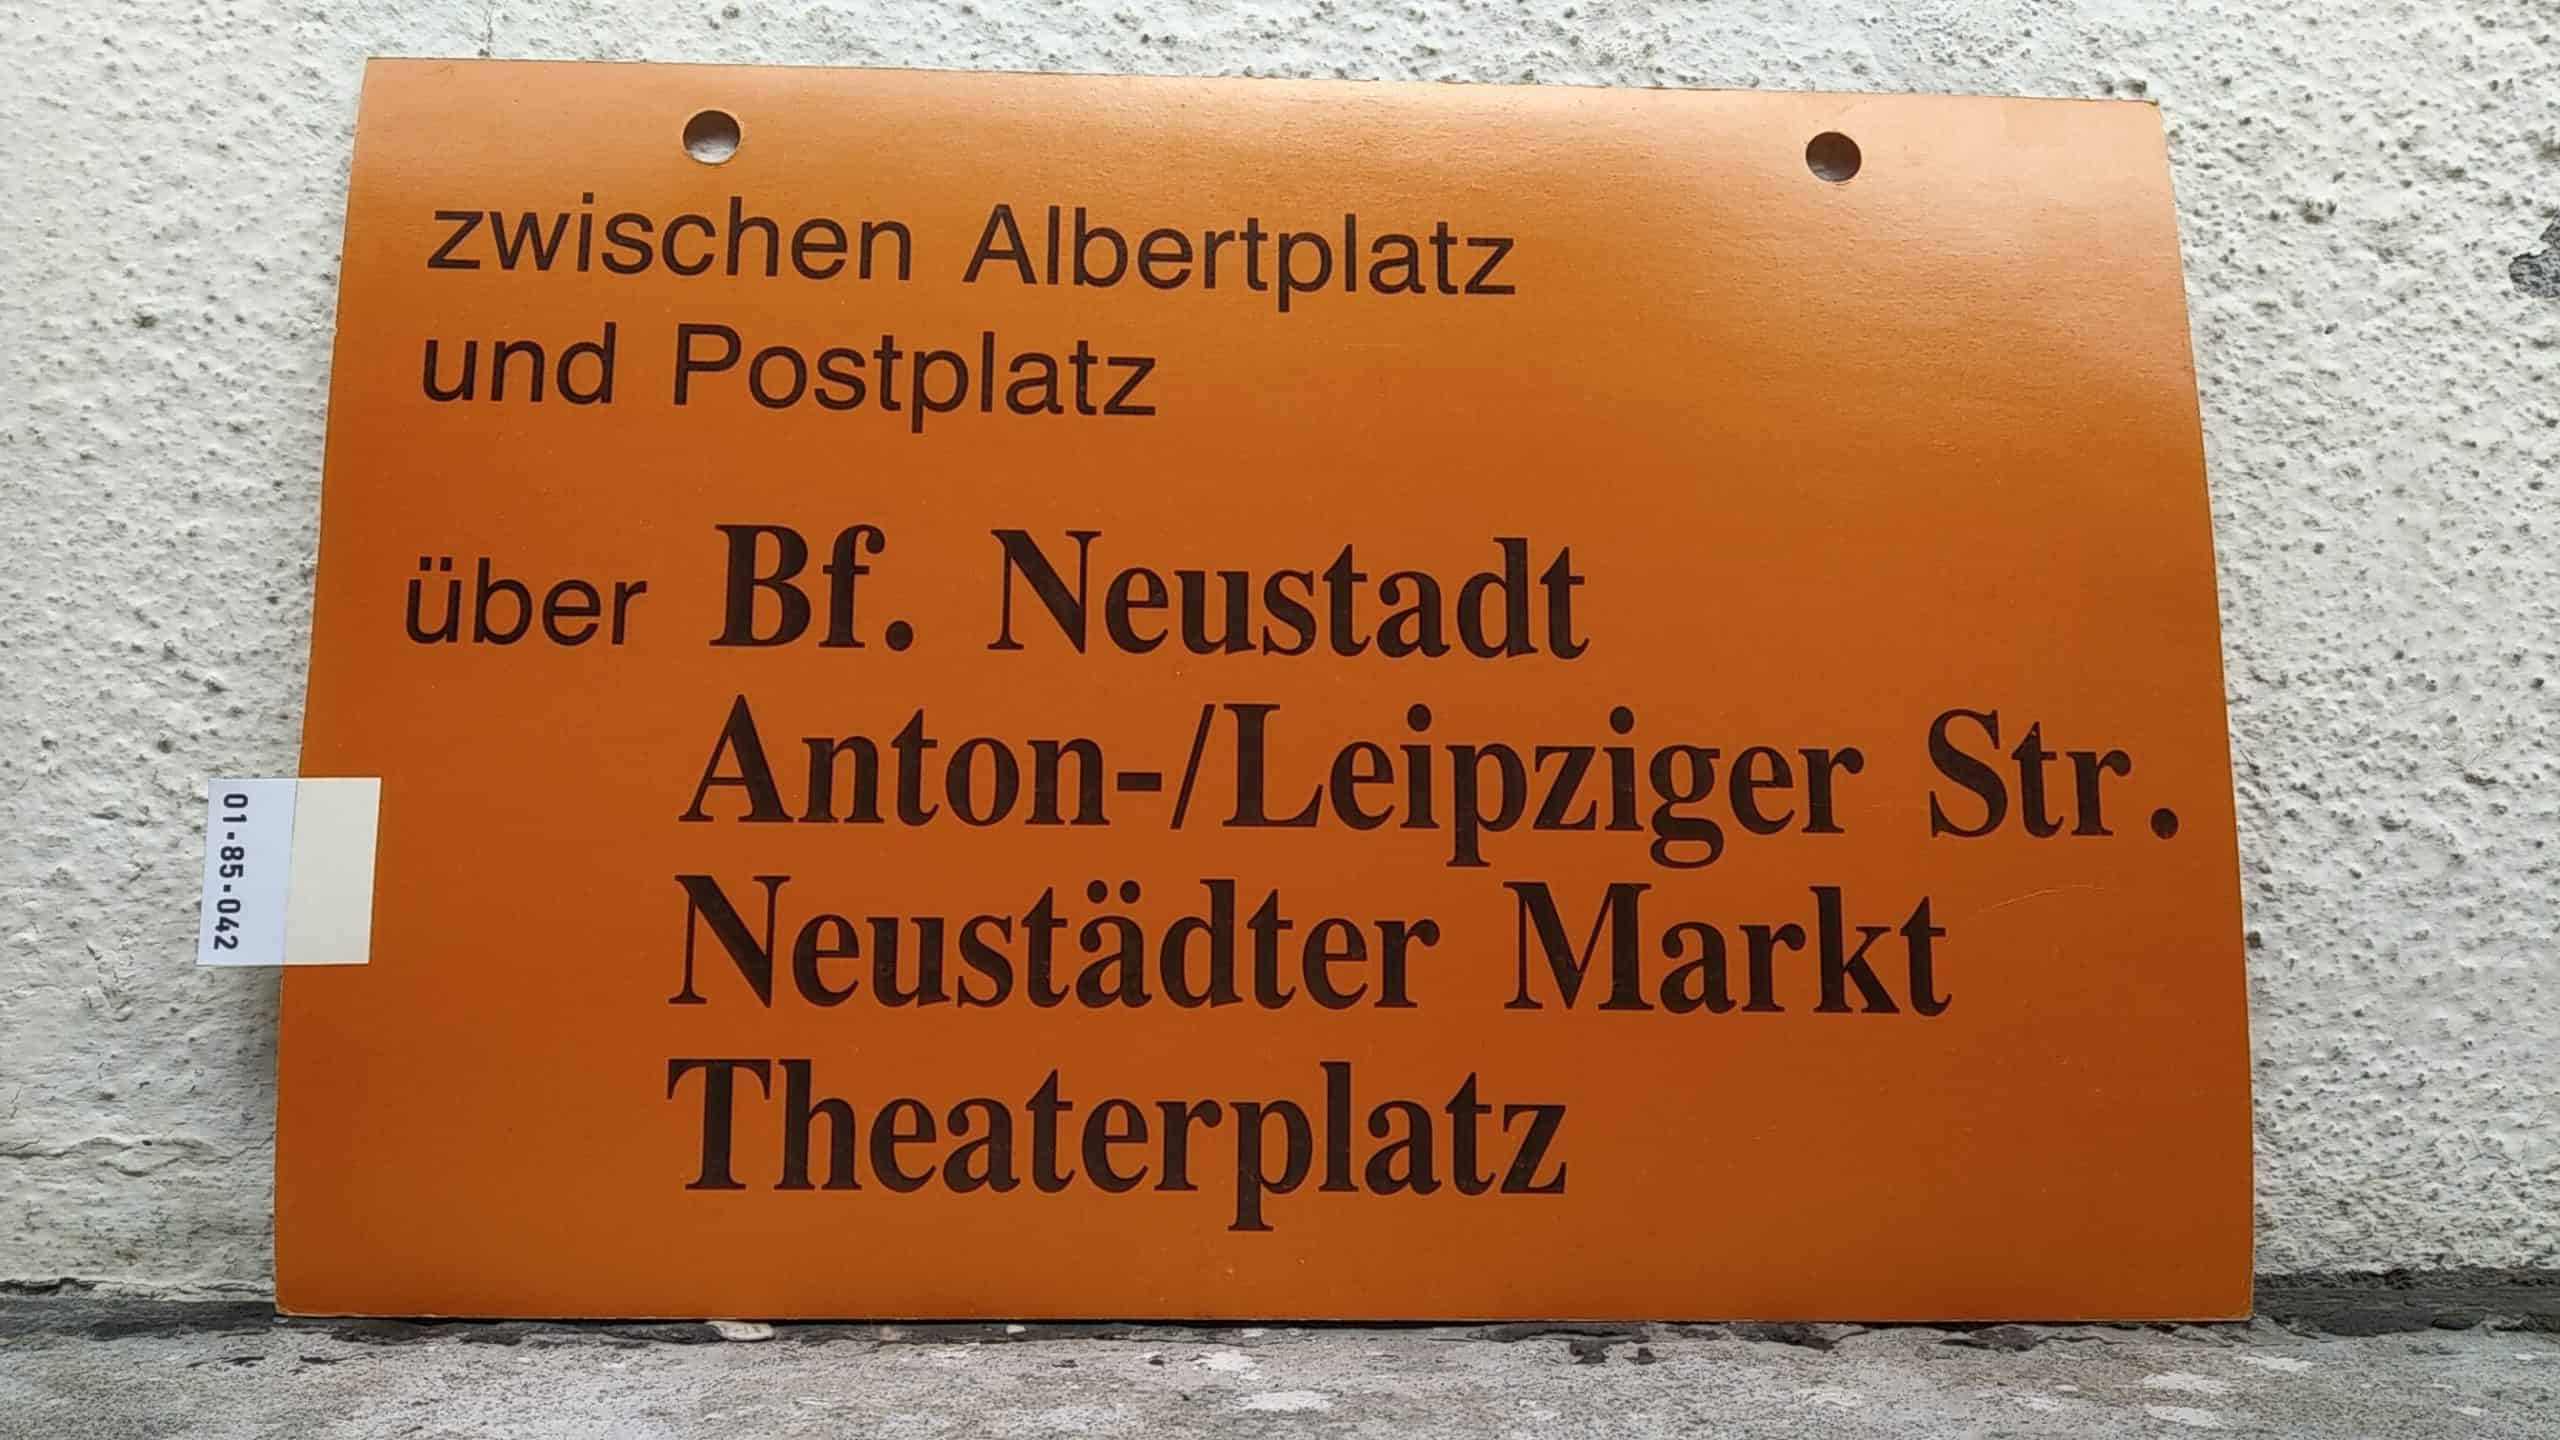 Ein seltenes Straßenbahn-Umleitungsschild aus Dresden: zwischen Albertplatz und Postplatz über Bf. Neustadt Anton-/Leipziger Str. Neustädter Markt Theaterplatz